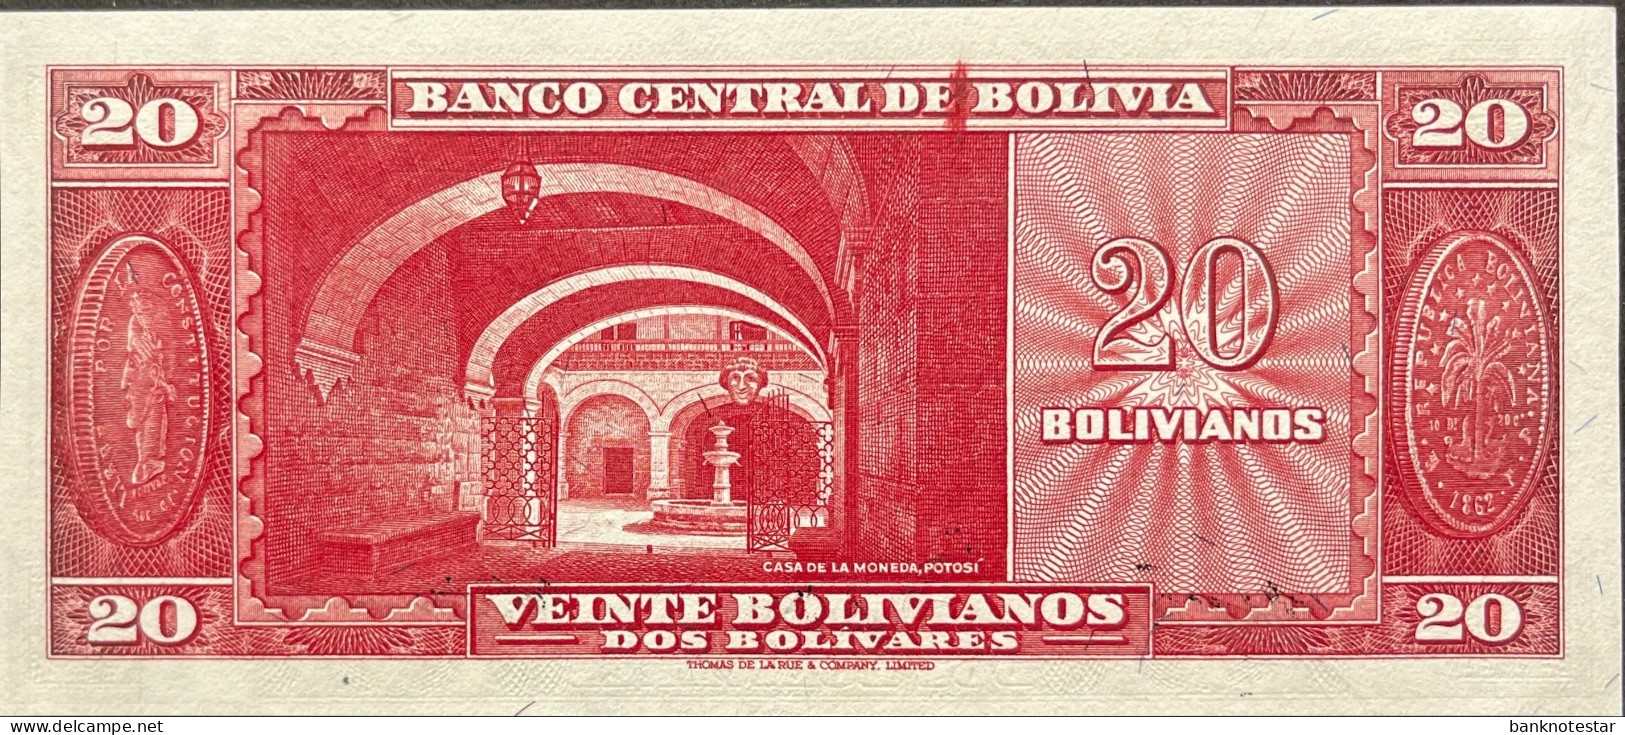 Bolivia 20 Bolivianos, P-140 (L.1945) - UNC - Bolivia